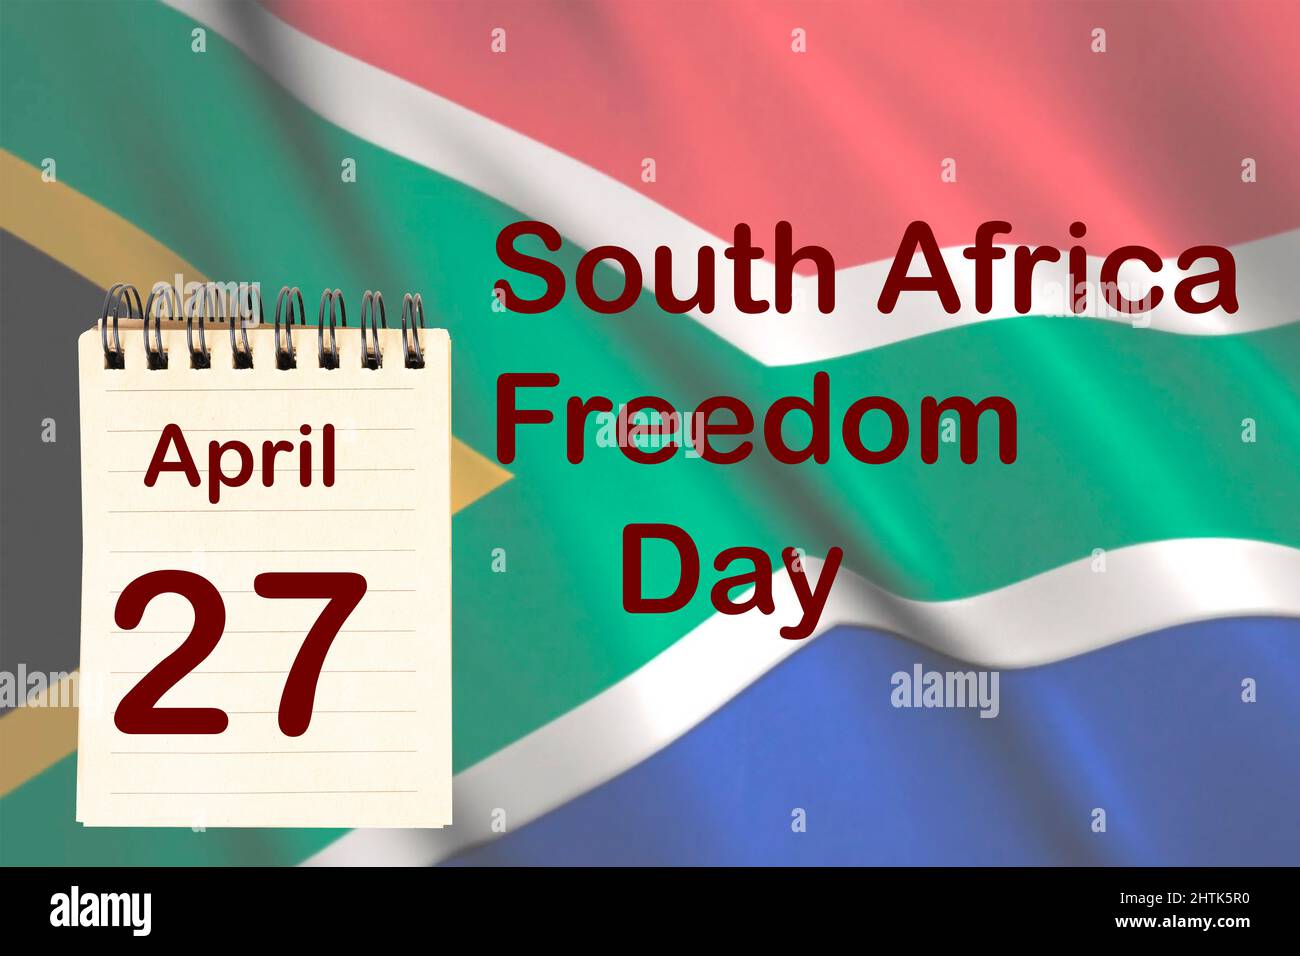 Die Feier des südafrikanischen Freiheitstages mit der Flagge und dem Kalender, der den 27. April anzeigt Stockfoto